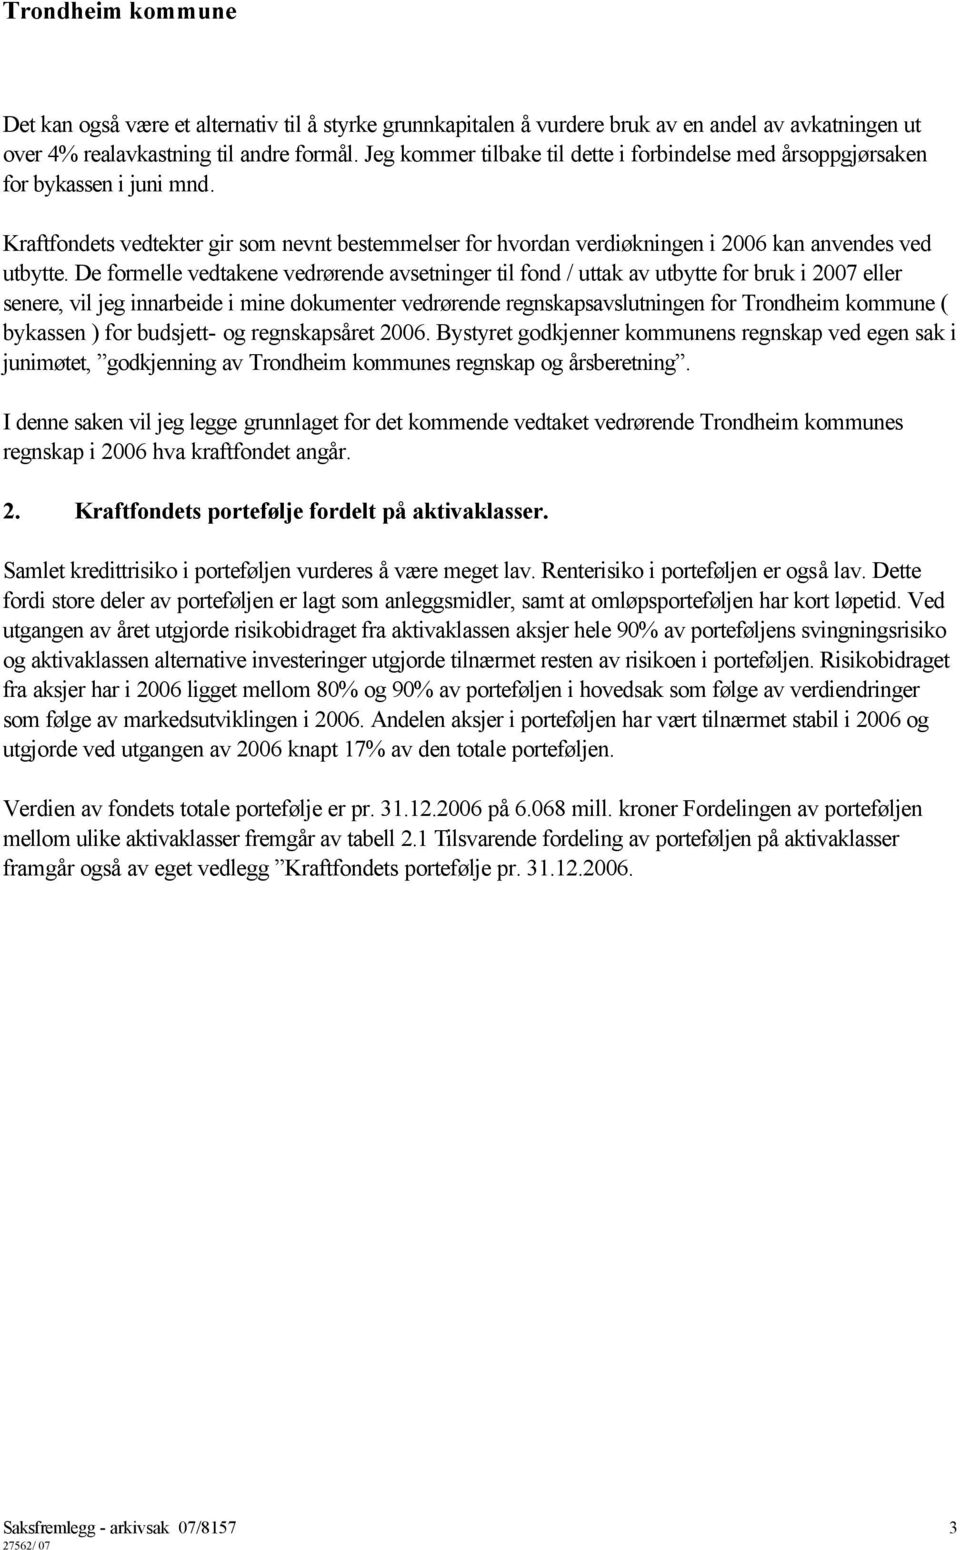 De formelle vedtakene vedrørende avsetninger til fond / uttak av utbytte for bruk i 2007 eller senere, vil jeg innarbeide i mine dokumenter vedrørende regnskapsavslutningen for Trondheim kommune (